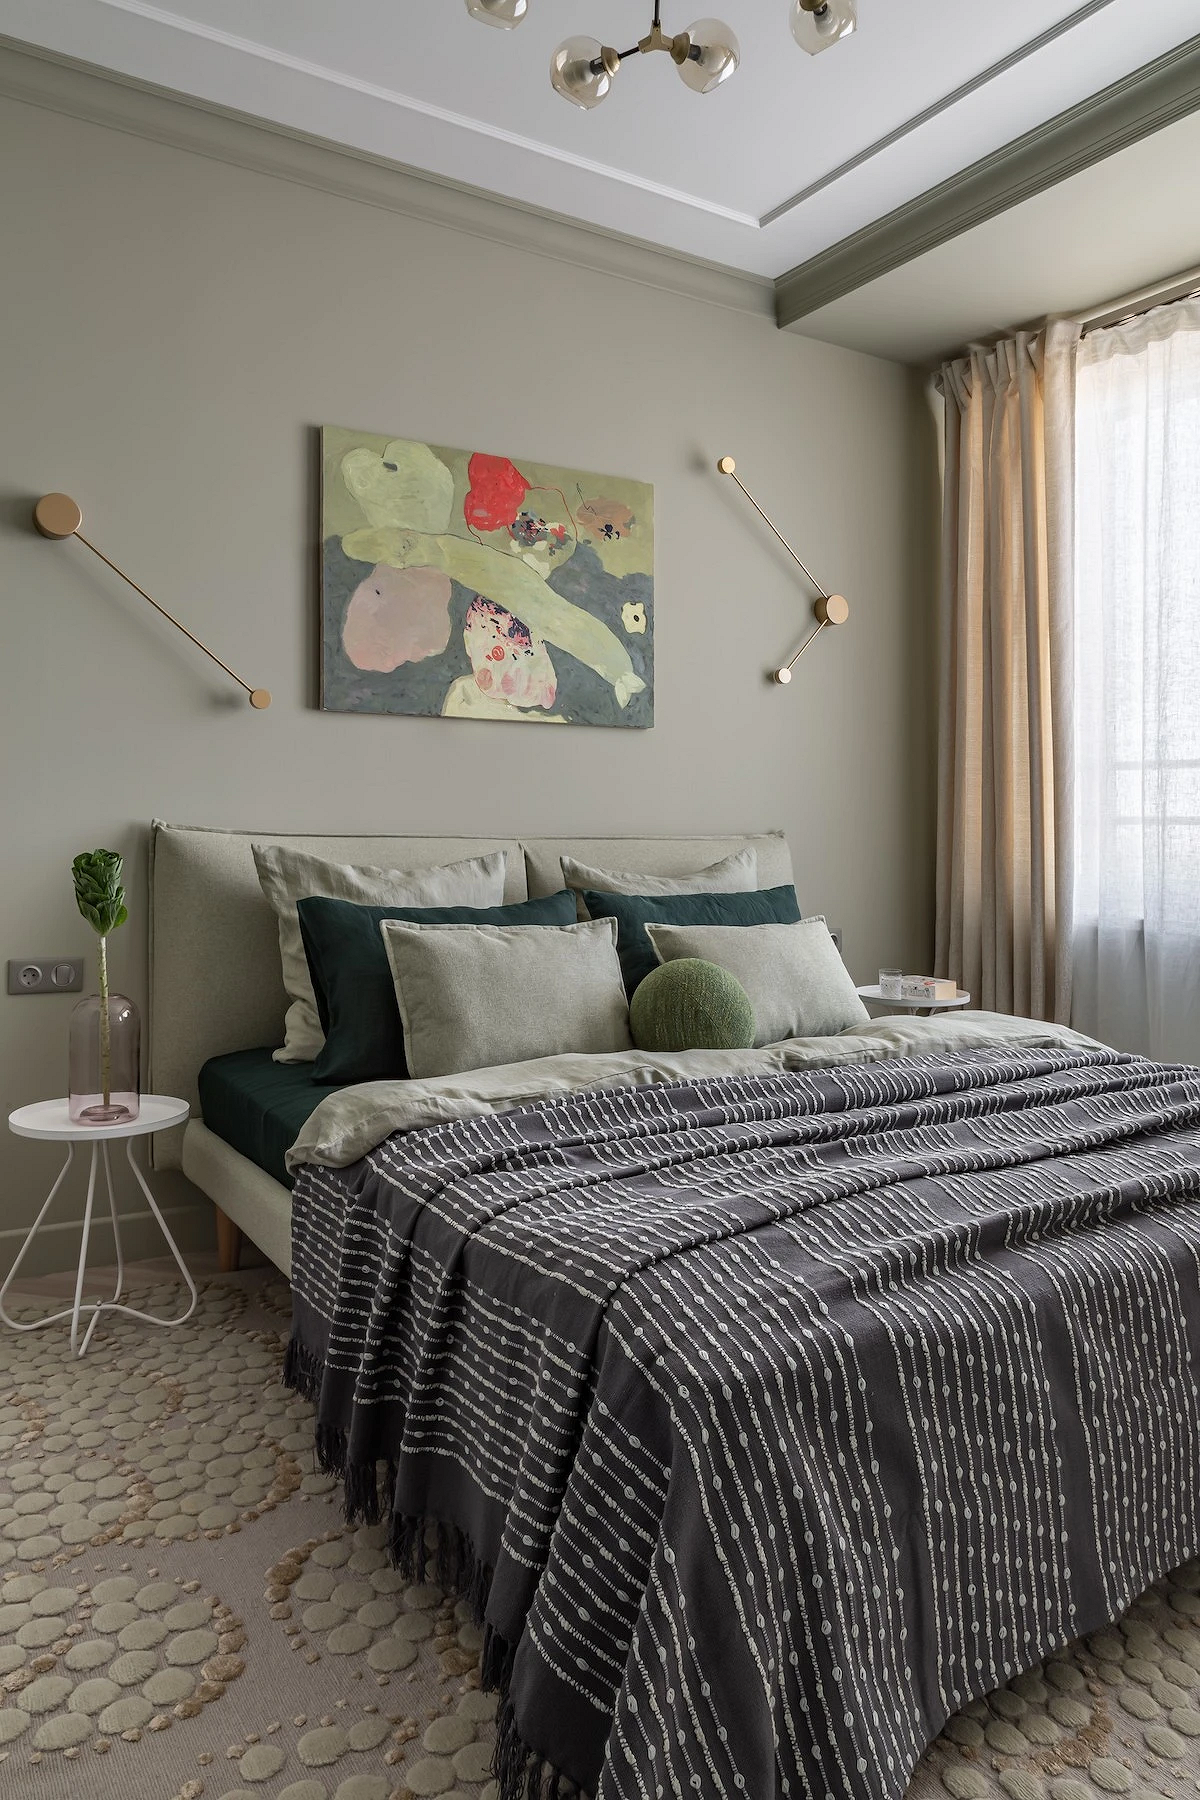 Как дизайнеры оформляют свои спальни? 6 красивых комнат из проектов профи9